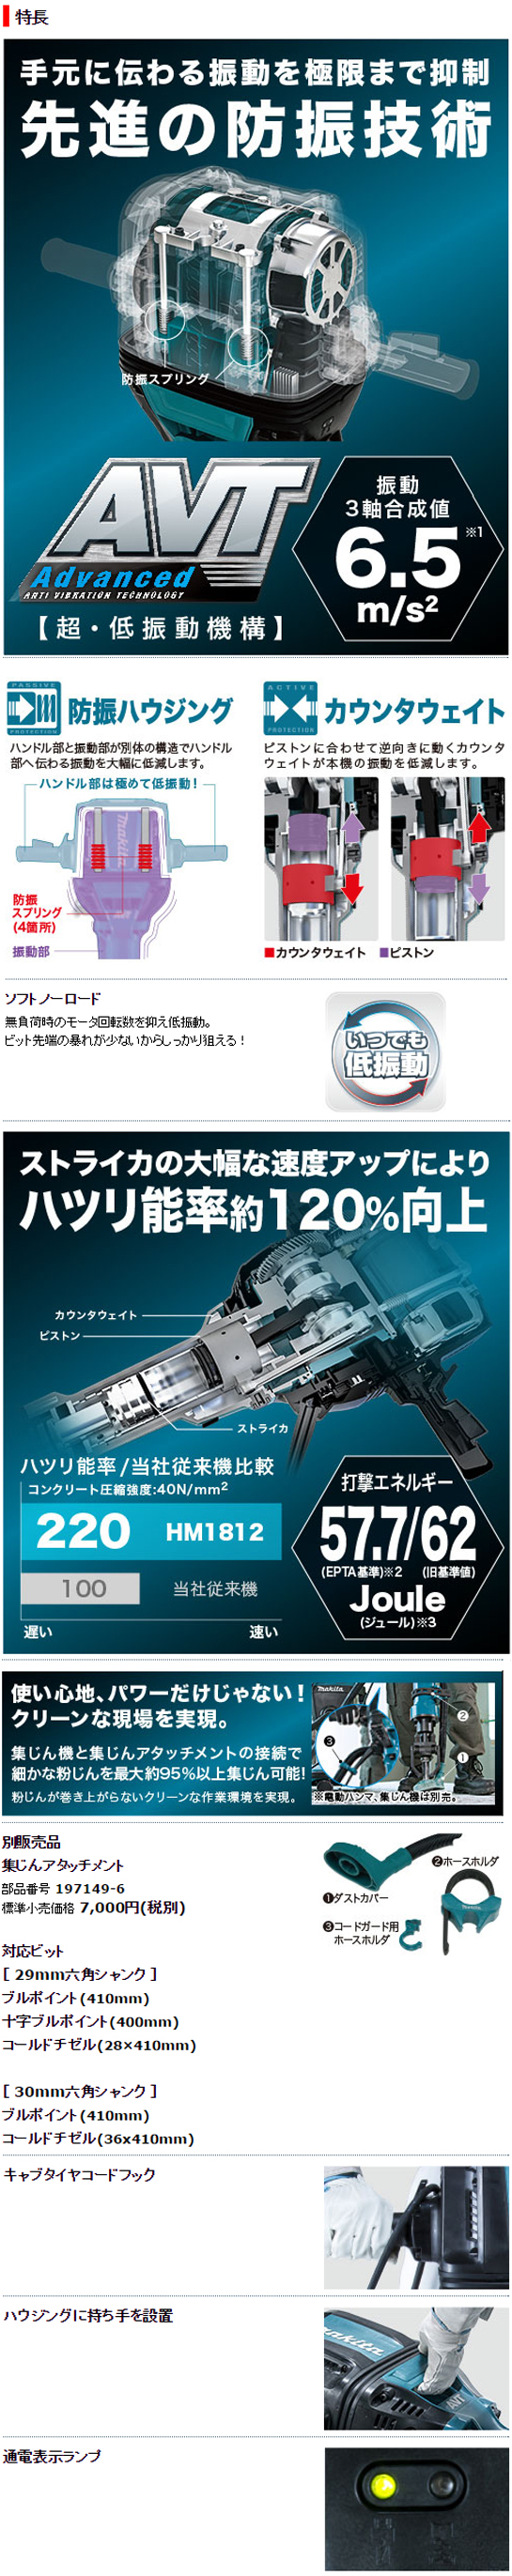 マキタ 電動ハンマ HM1812